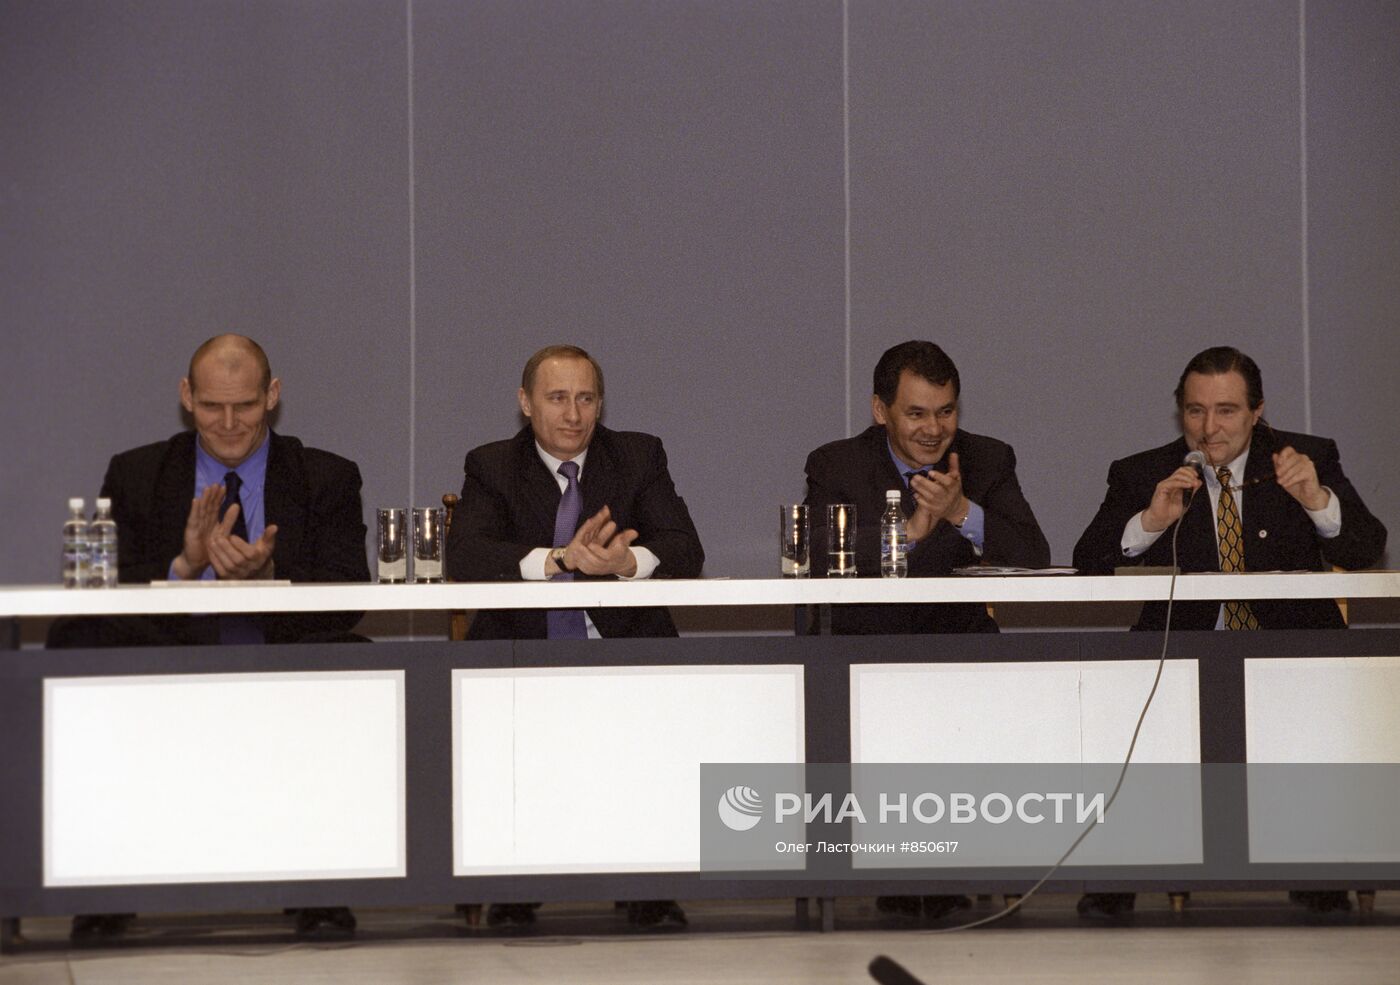 Заседание сторонников Общероссийского движения "Единство"